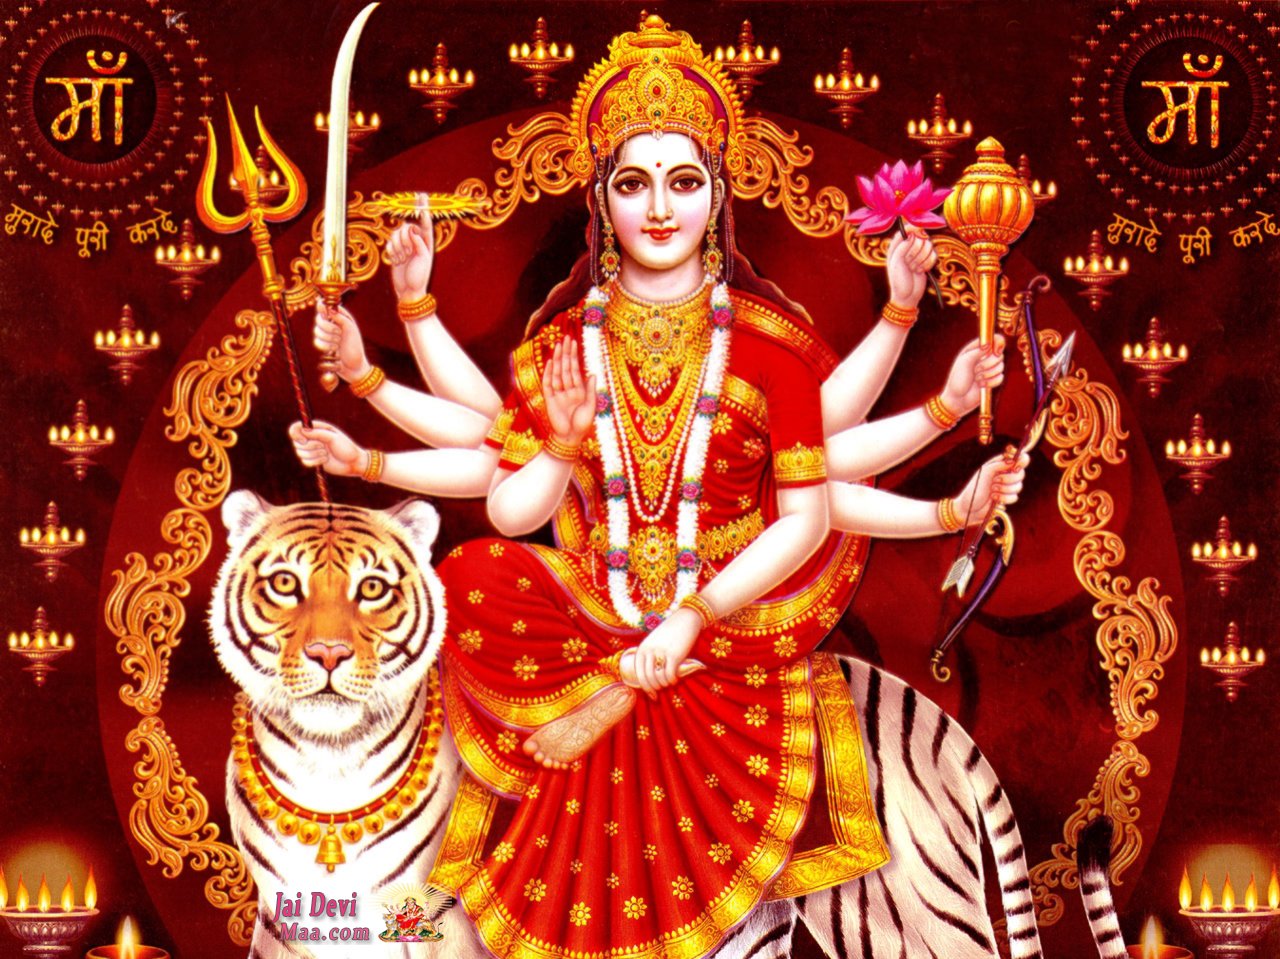 26 सिंतबर से शुरू हो रहा है शारदीय नवरात्रि, जानिए आश्विन मास की नवरात्रि क्यों हैं खास